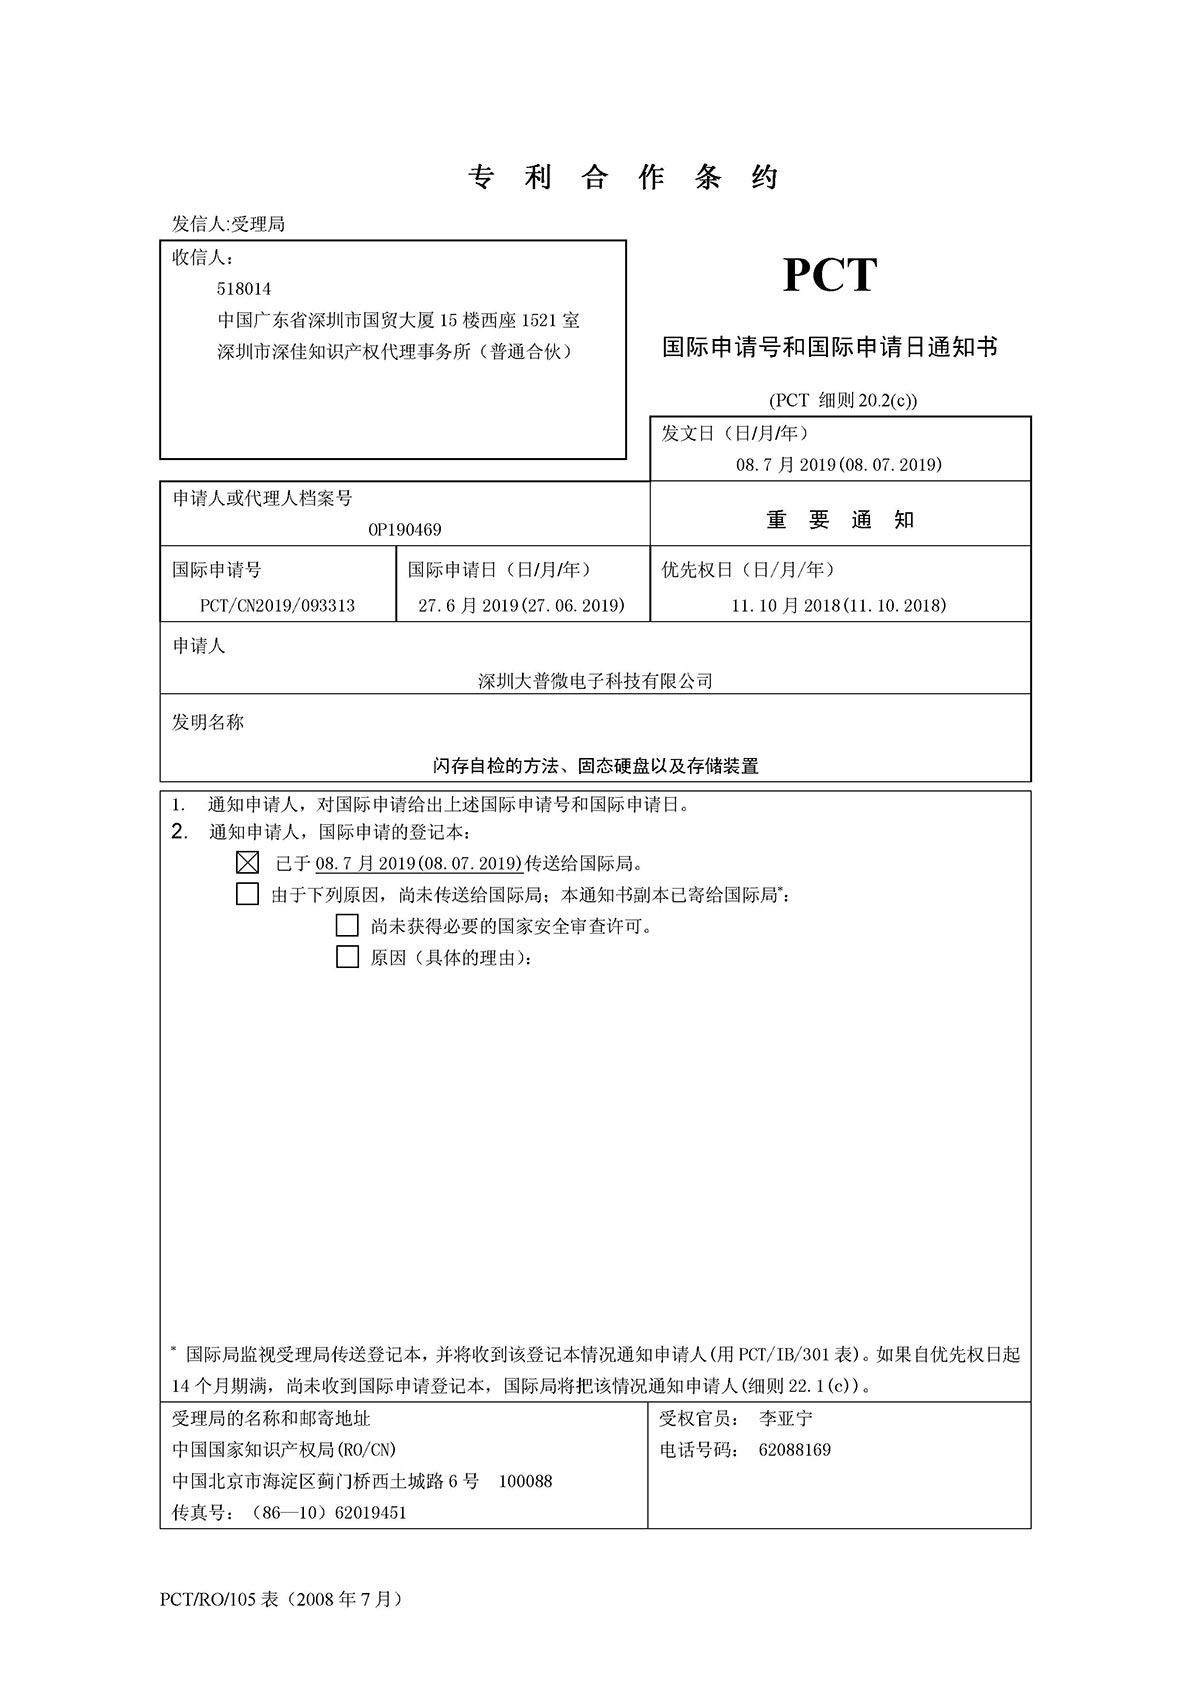 DPCT1-19004  国际申请号和申请日通知书